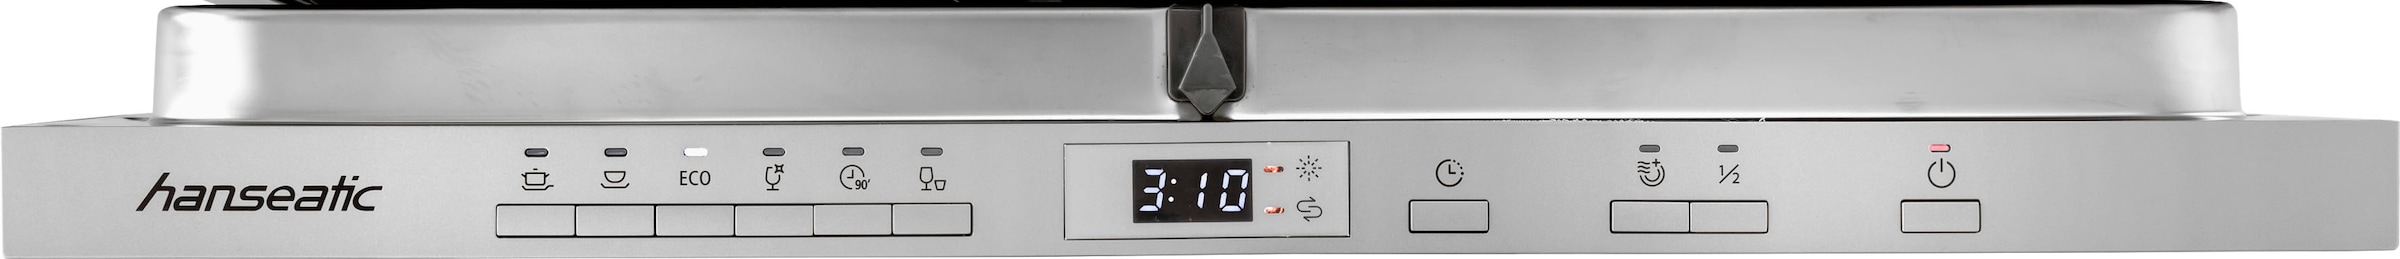 OPTIFIT Küchenzeile »Iver«, 300 cm breit, inklusive Elektrogeräte der Marke HANSEATIC